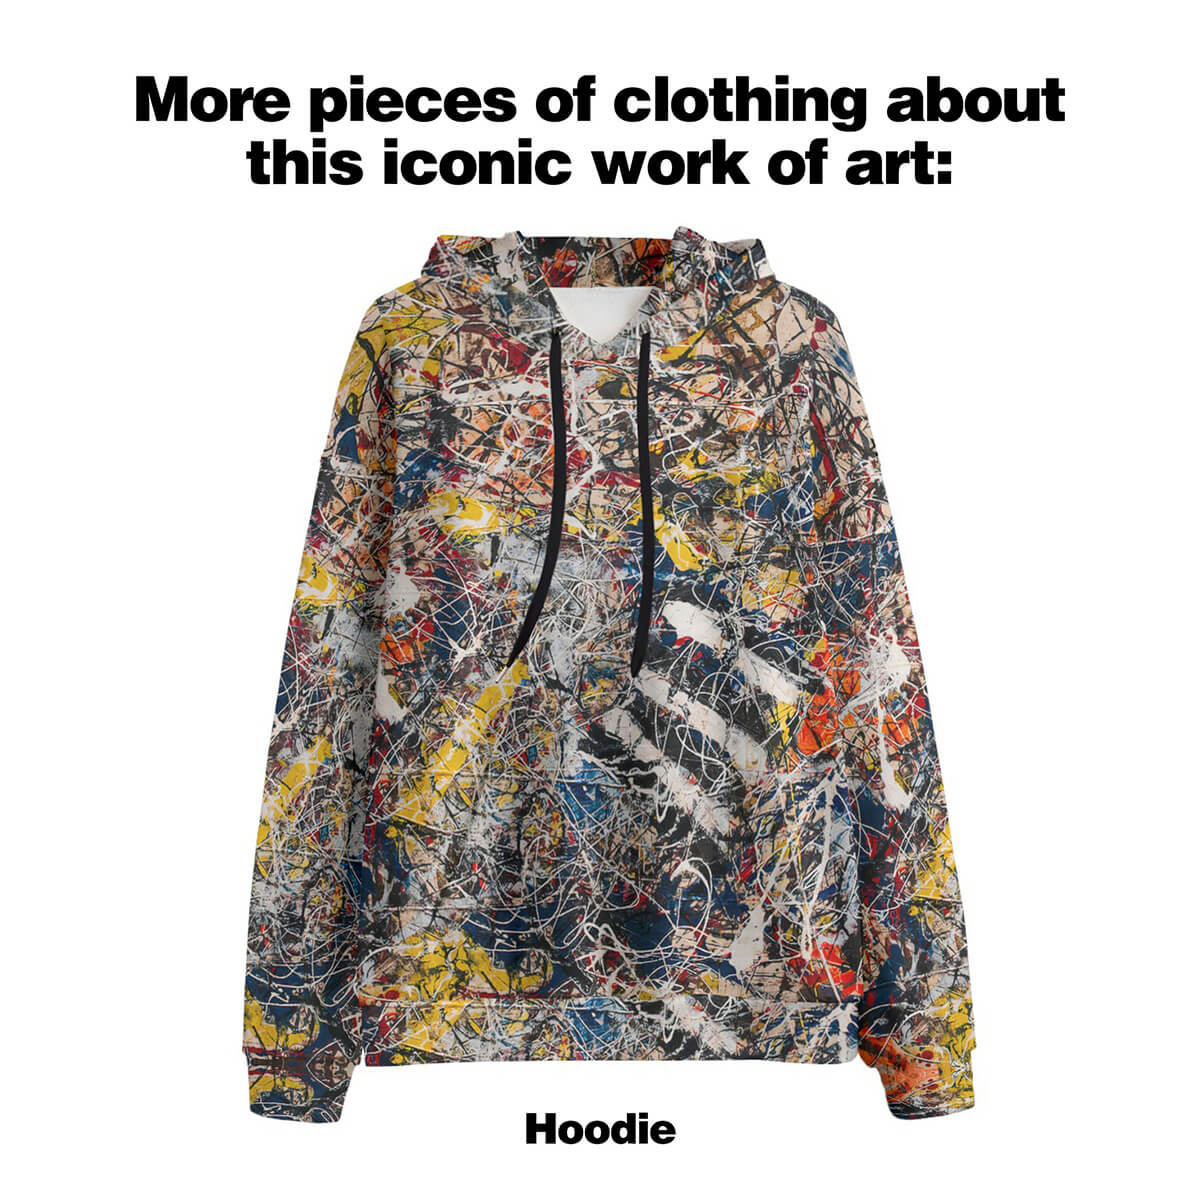 Hodvábny košeľový oblek Number 17A od Jacksona Pollocka